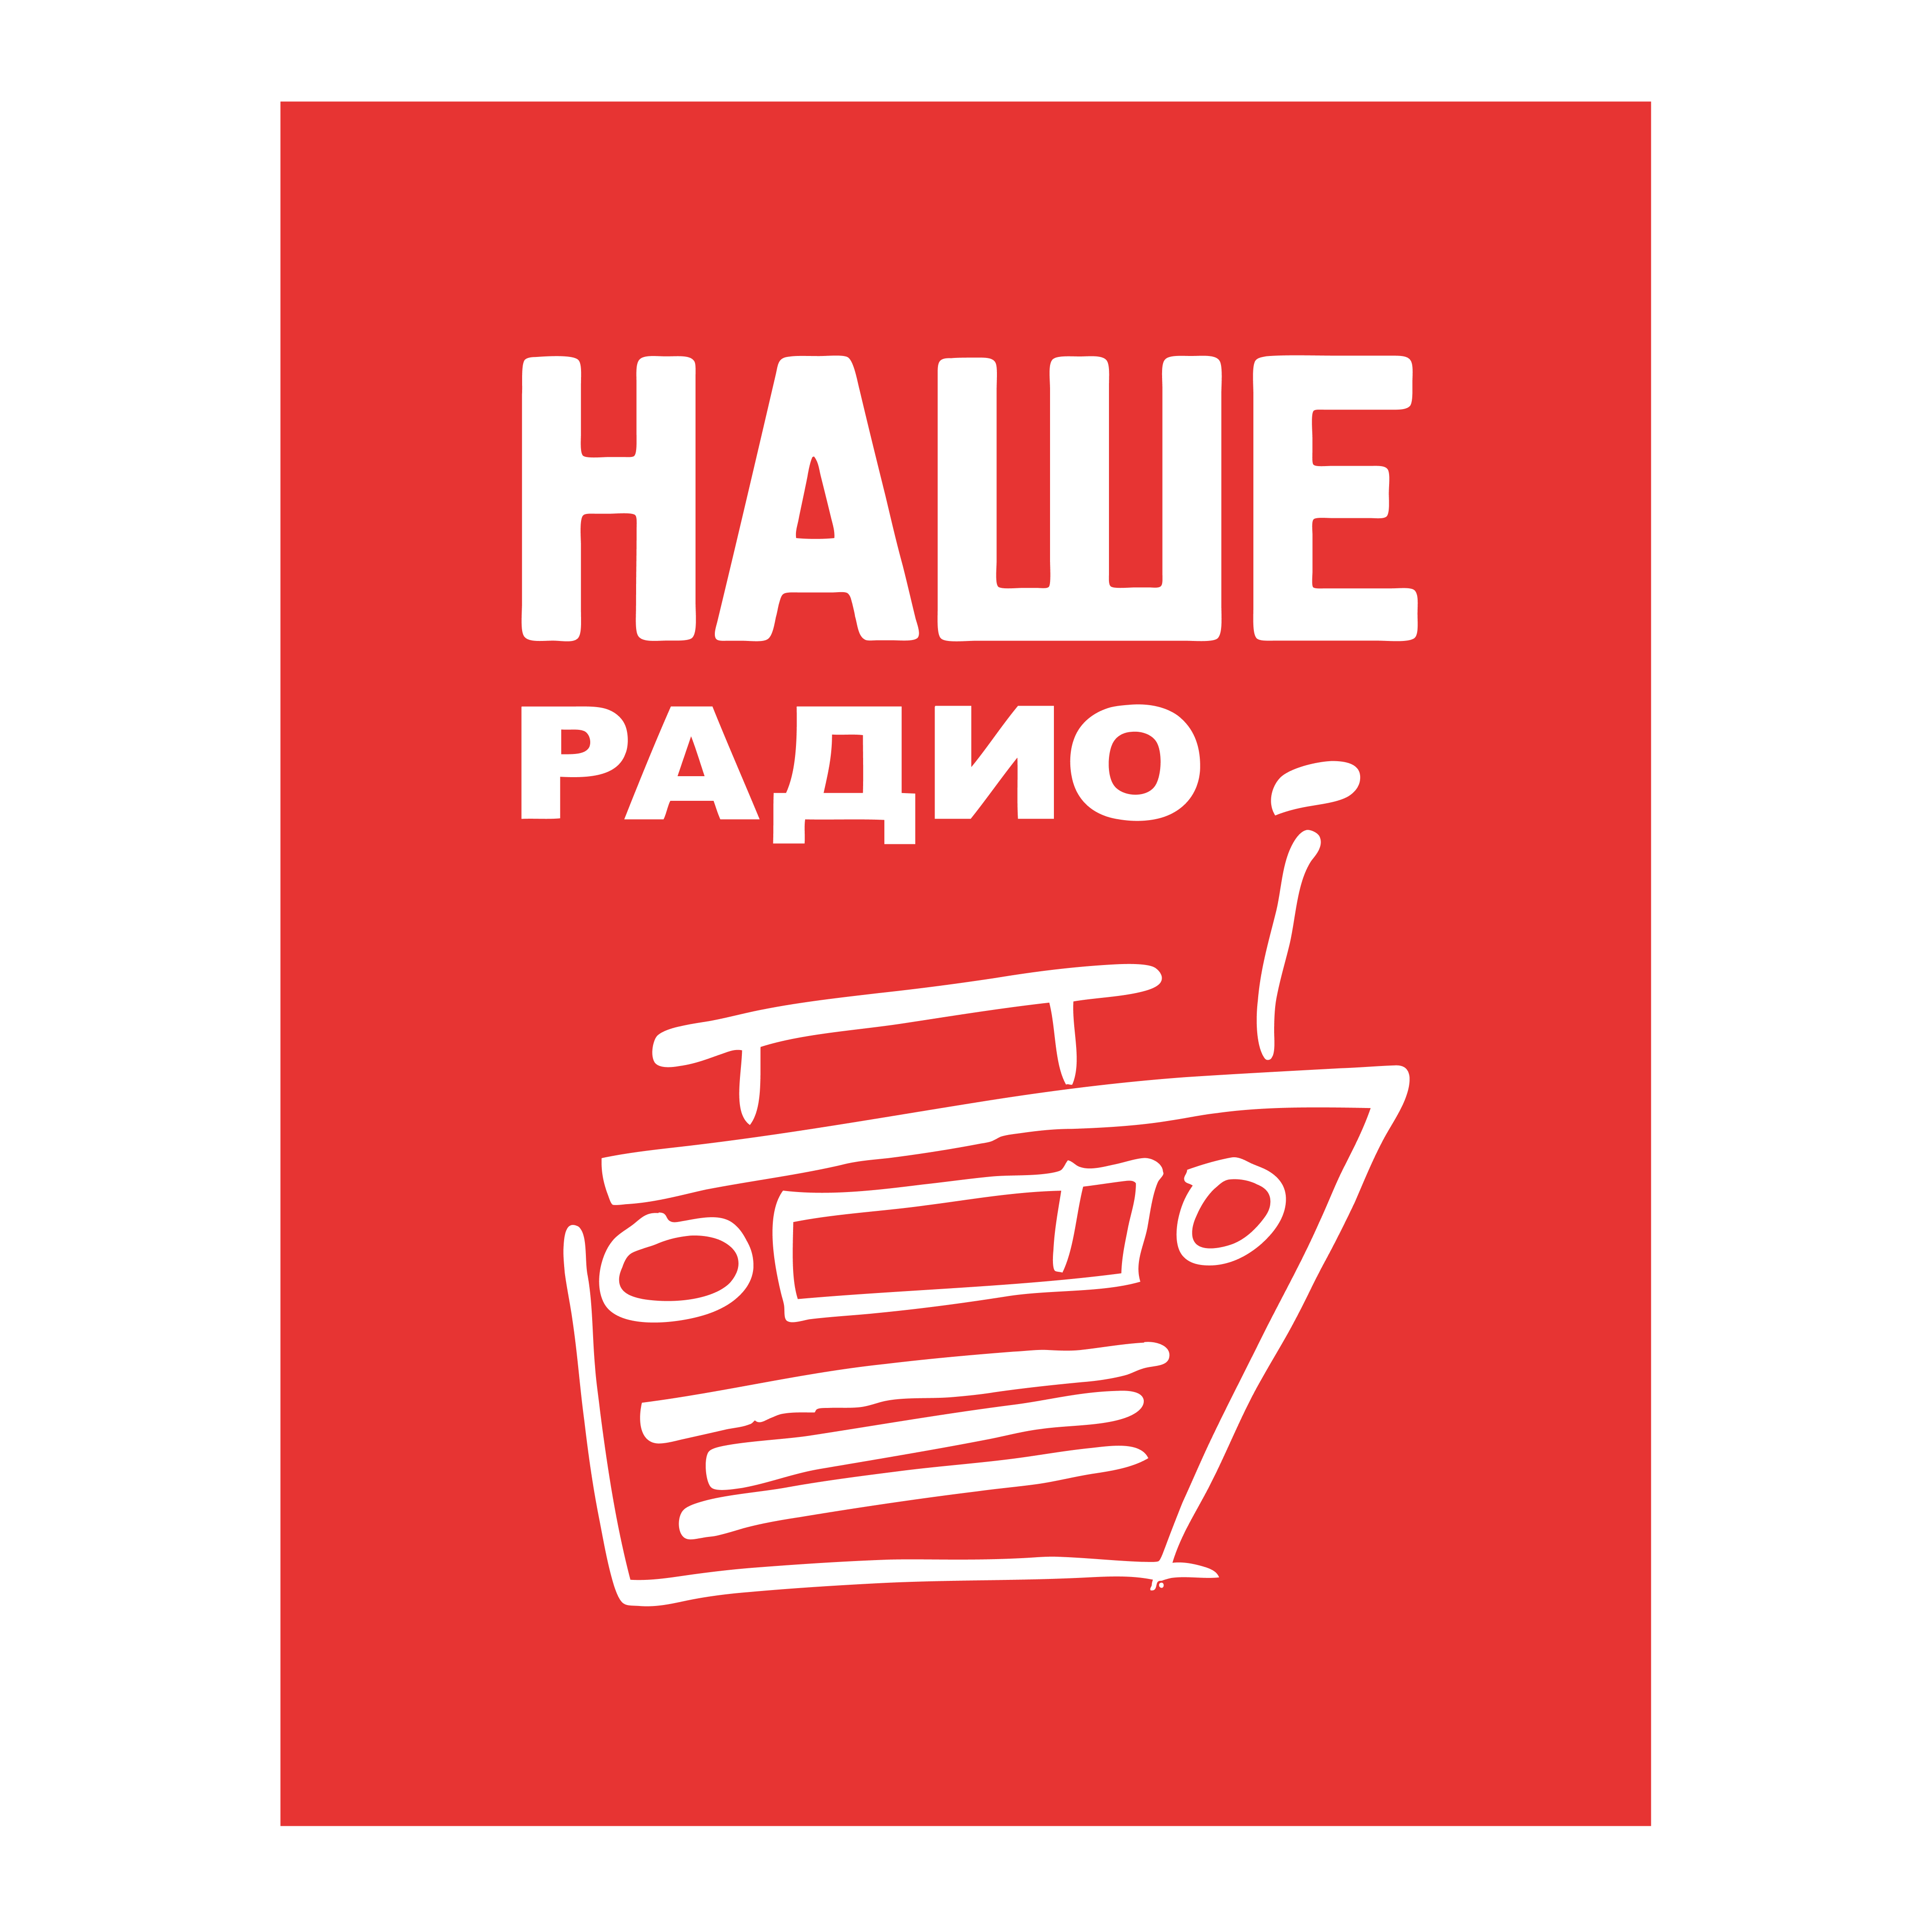 Логотип радиостанции НАШЕ радио - Россия